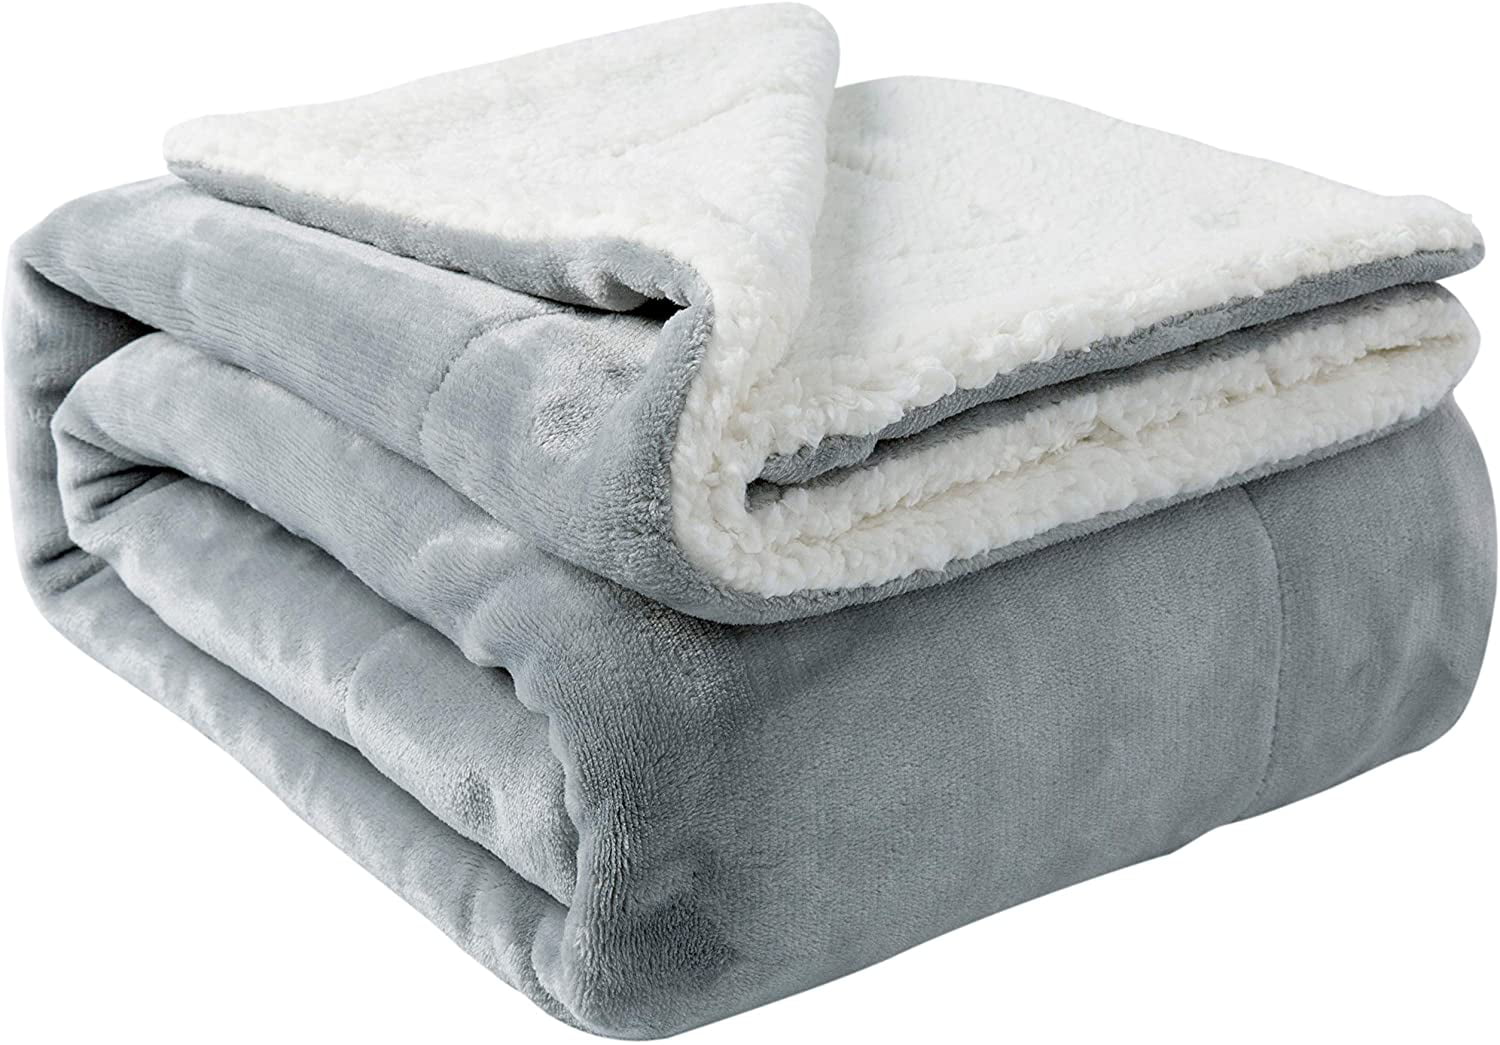 Nanpiper Sherpa Blanket Warm Blankets For Winter Super Soft Fuzzy Flannel Fleece Wool Like Reversible Velvet Plush Couch Blanket LightweightGrey Throw Size 50x60 Walmartcom Walmartcom